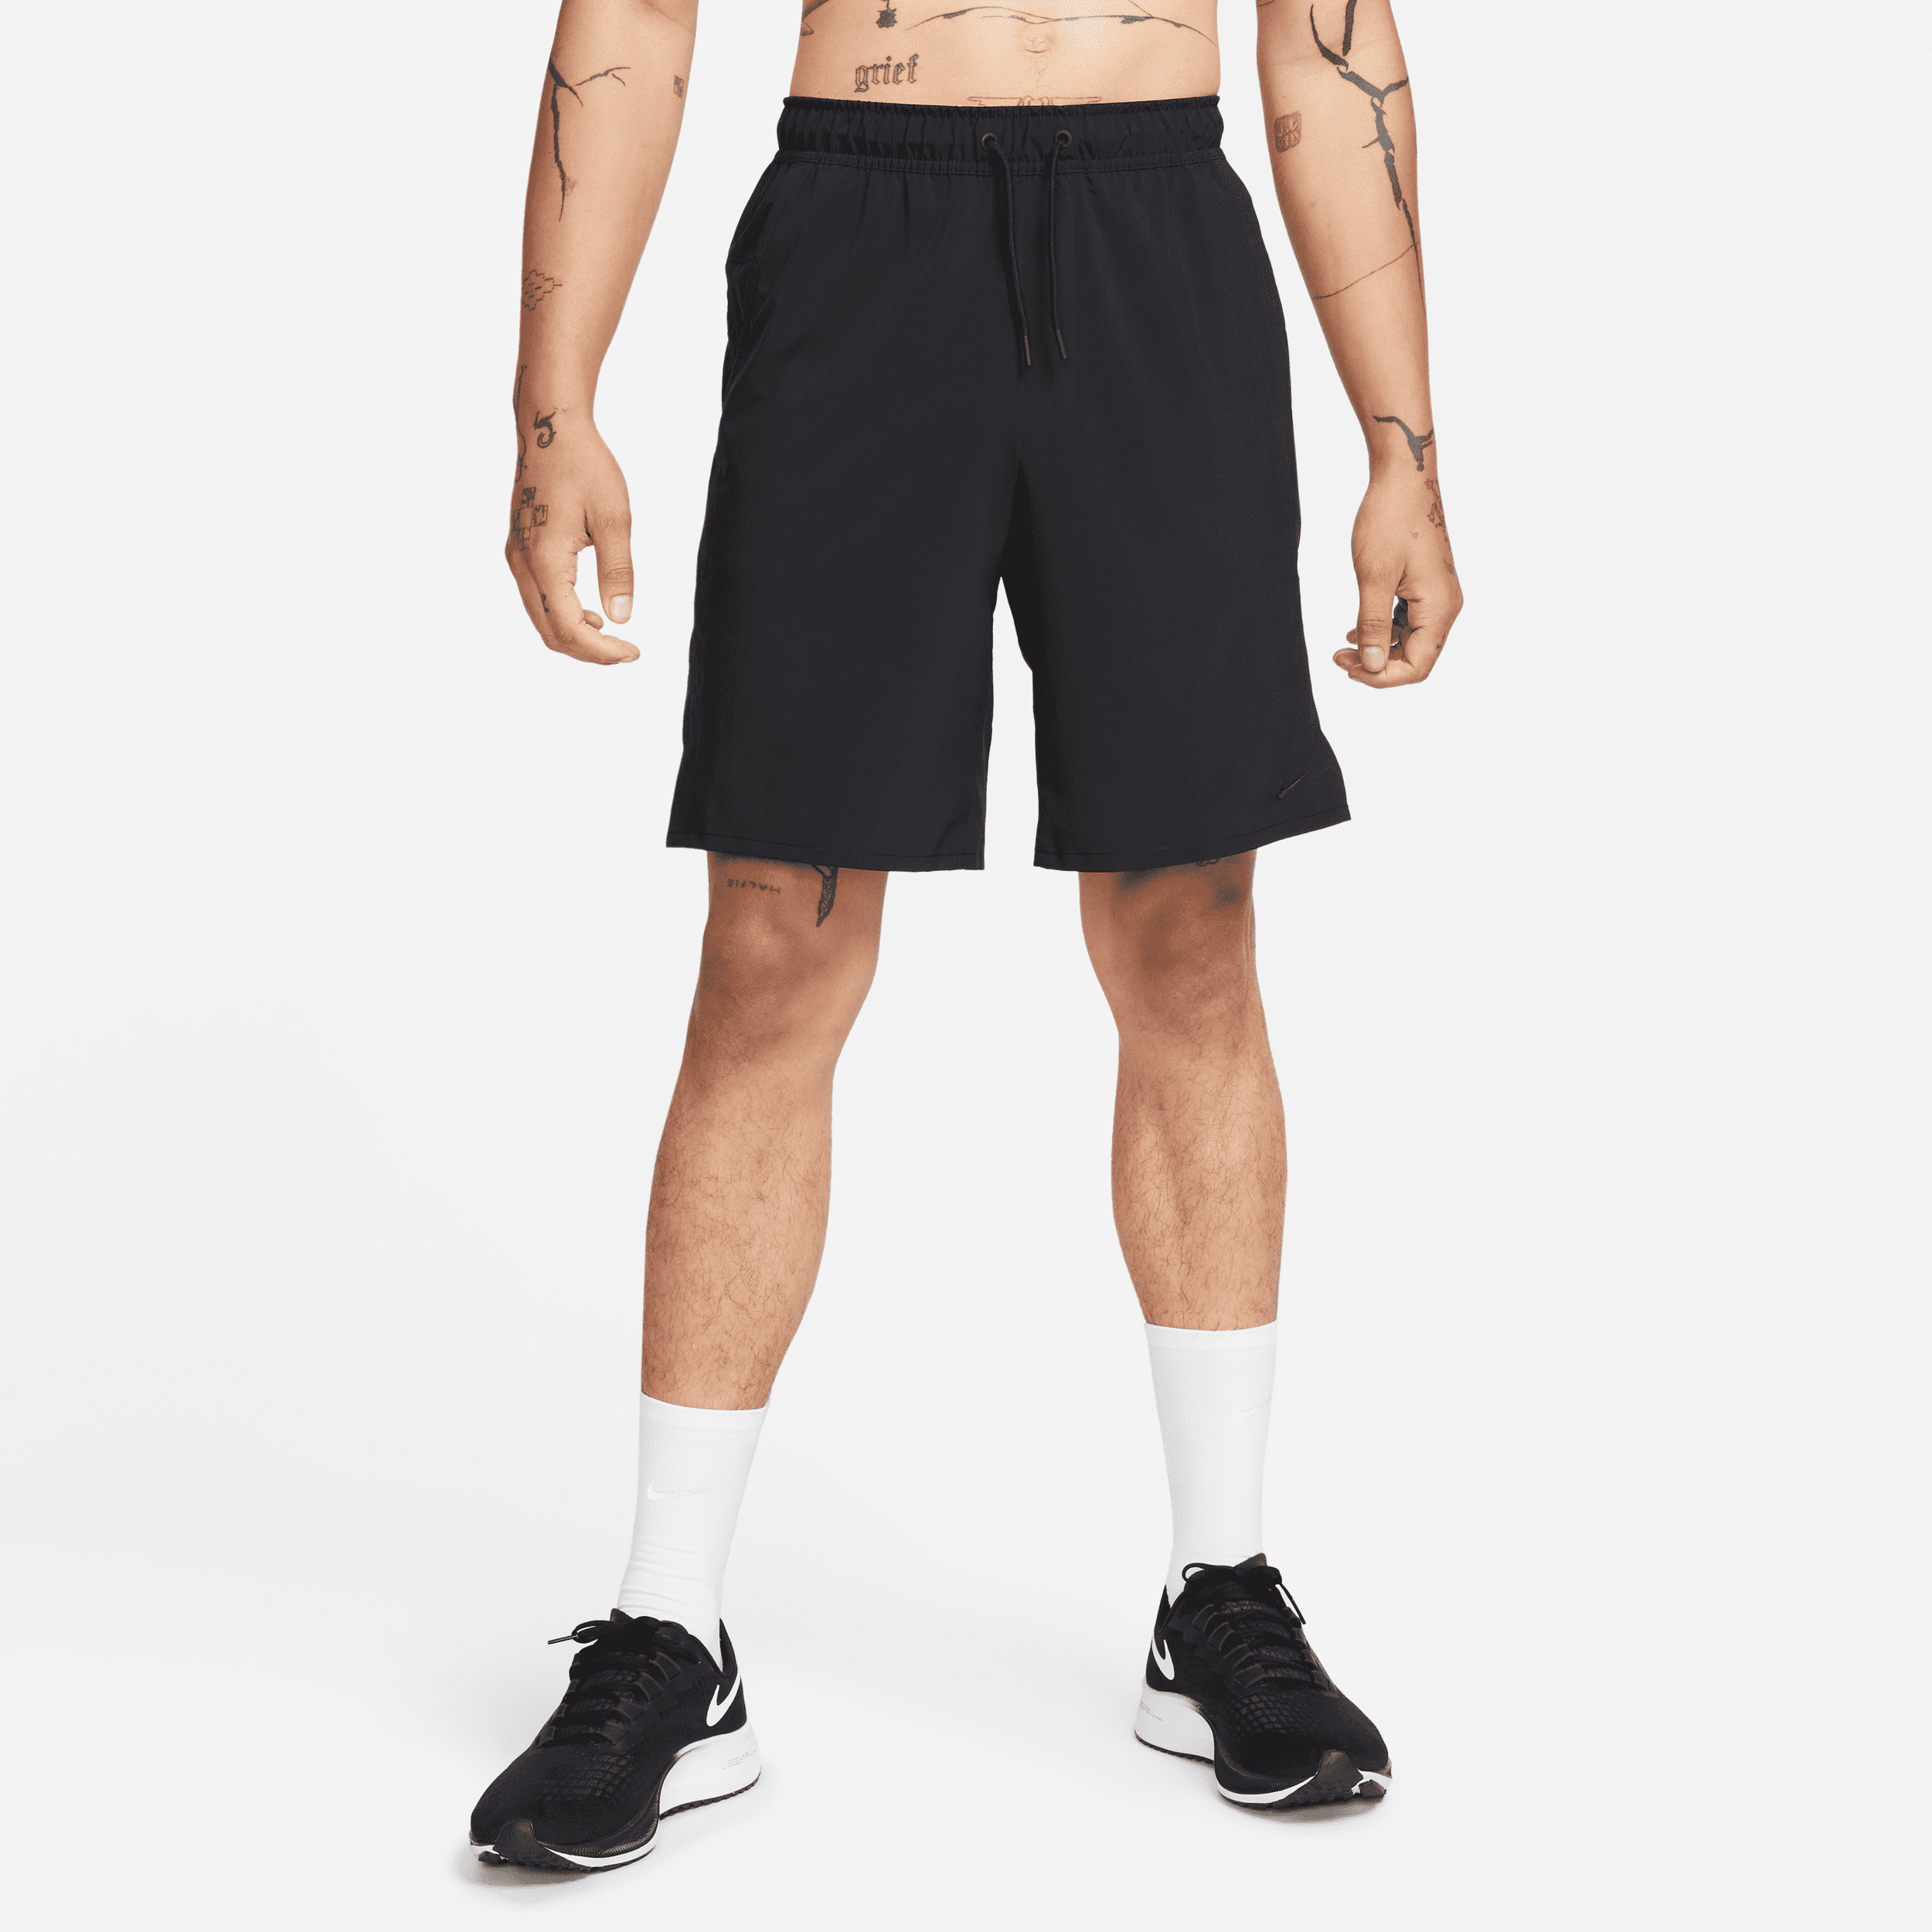 nike shorts versatili non foderati dri-fit 23 cm  unlimited – uomo - nero